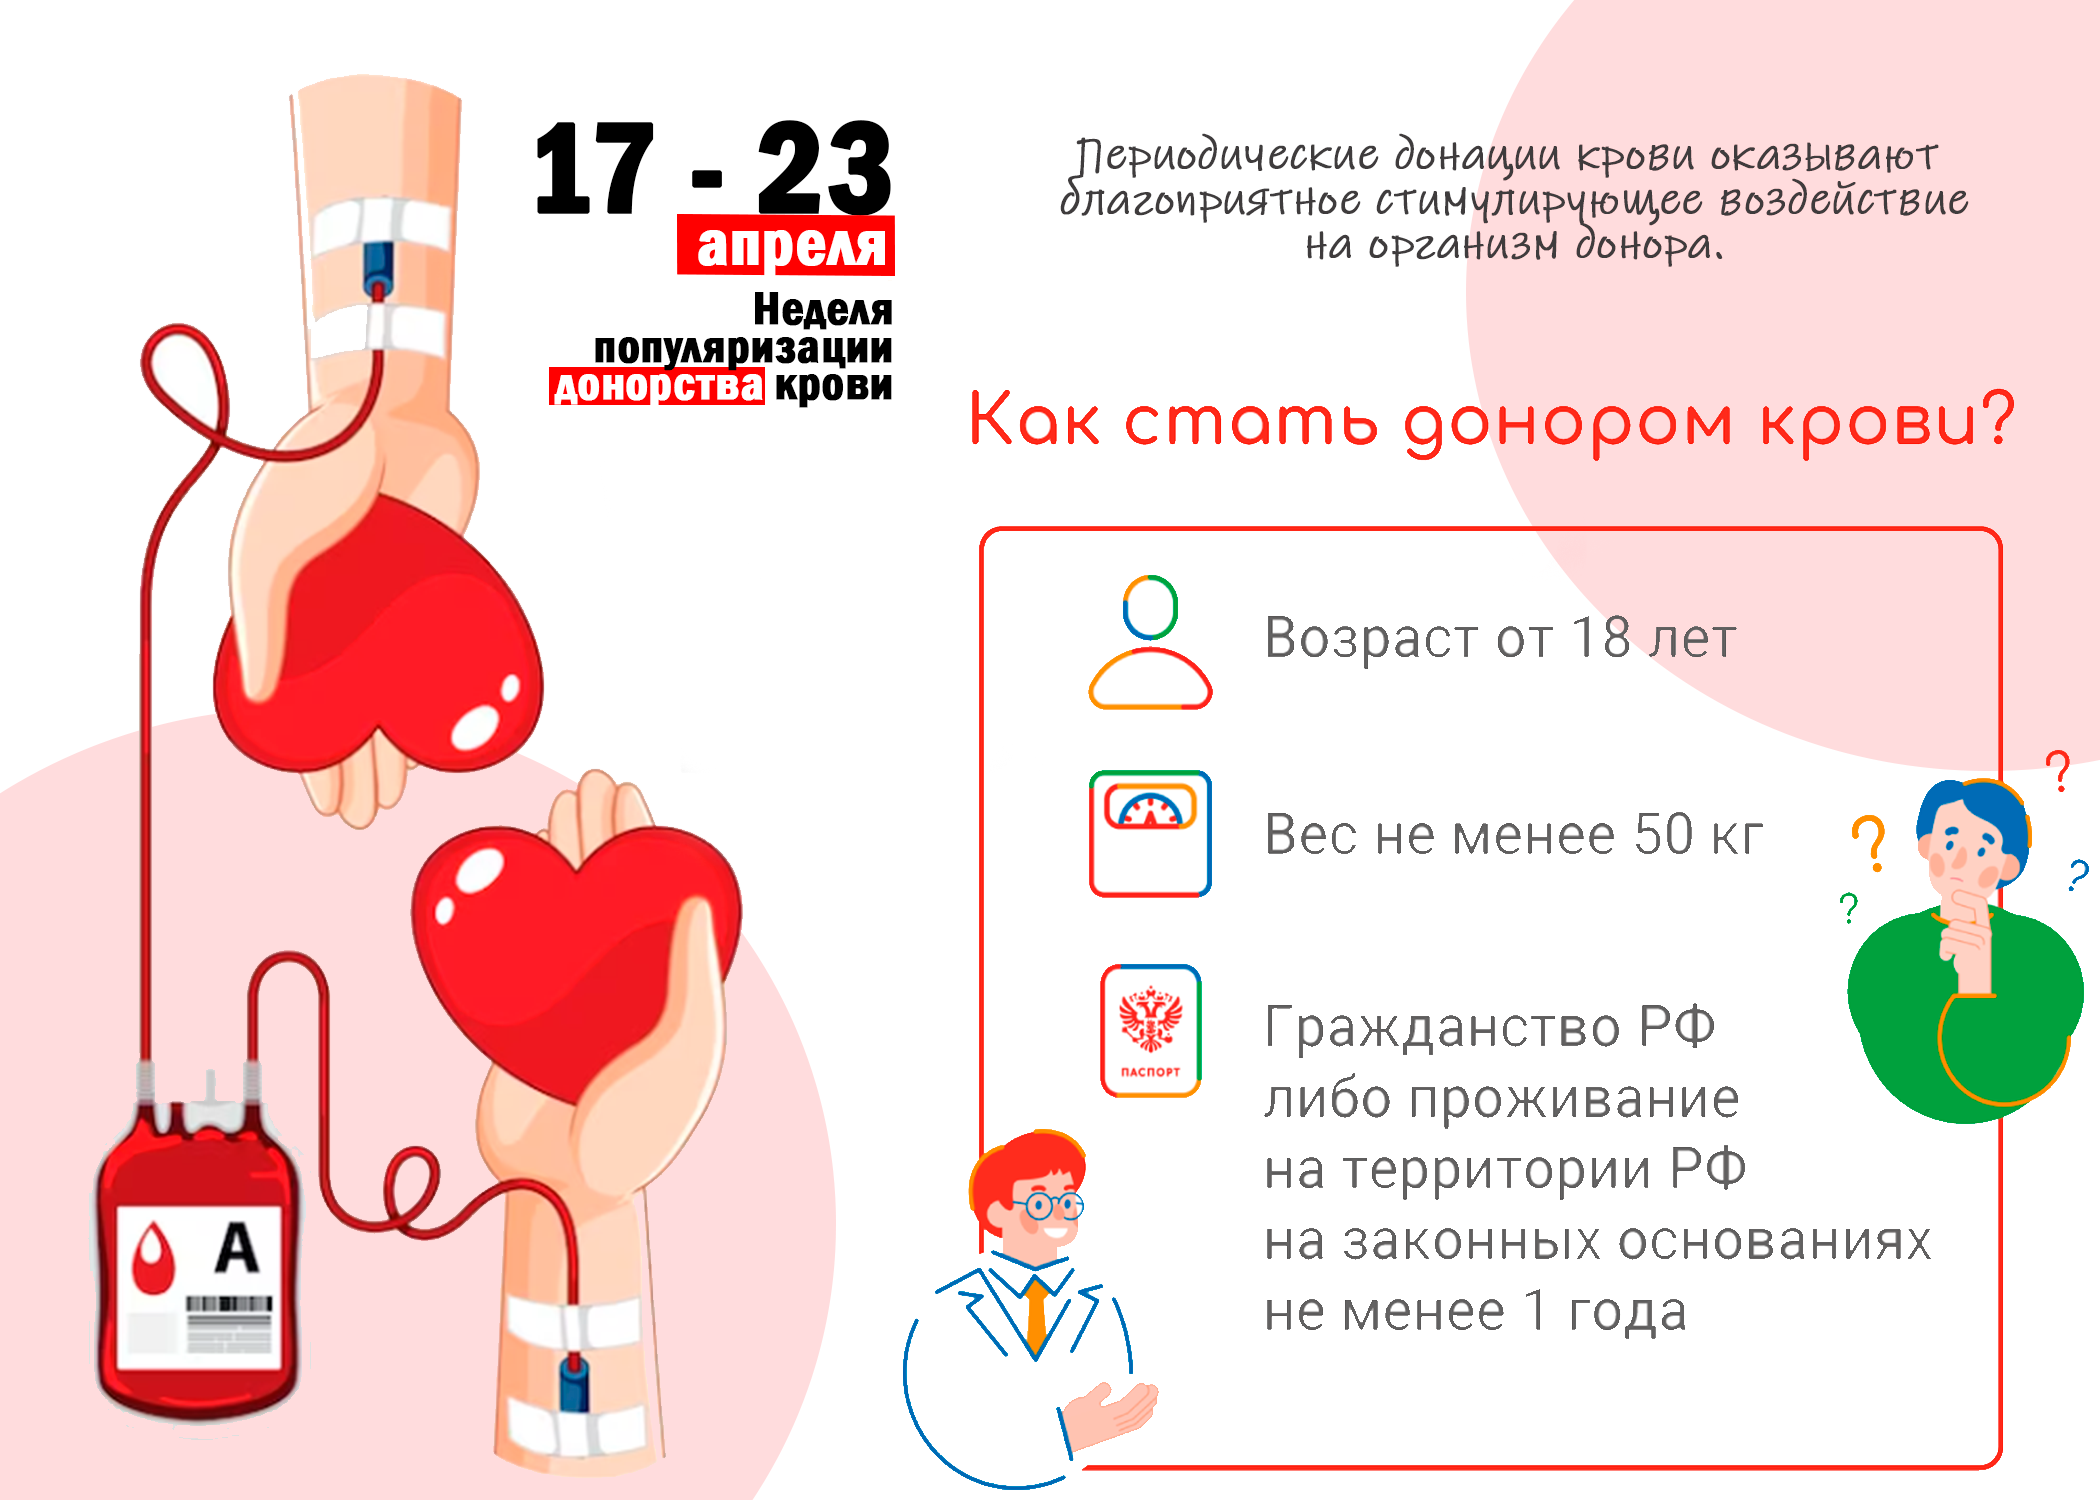 Неделя доноров крови. Донорство крови. Неделя донора крови. Донорство в России. День донора крови в России.